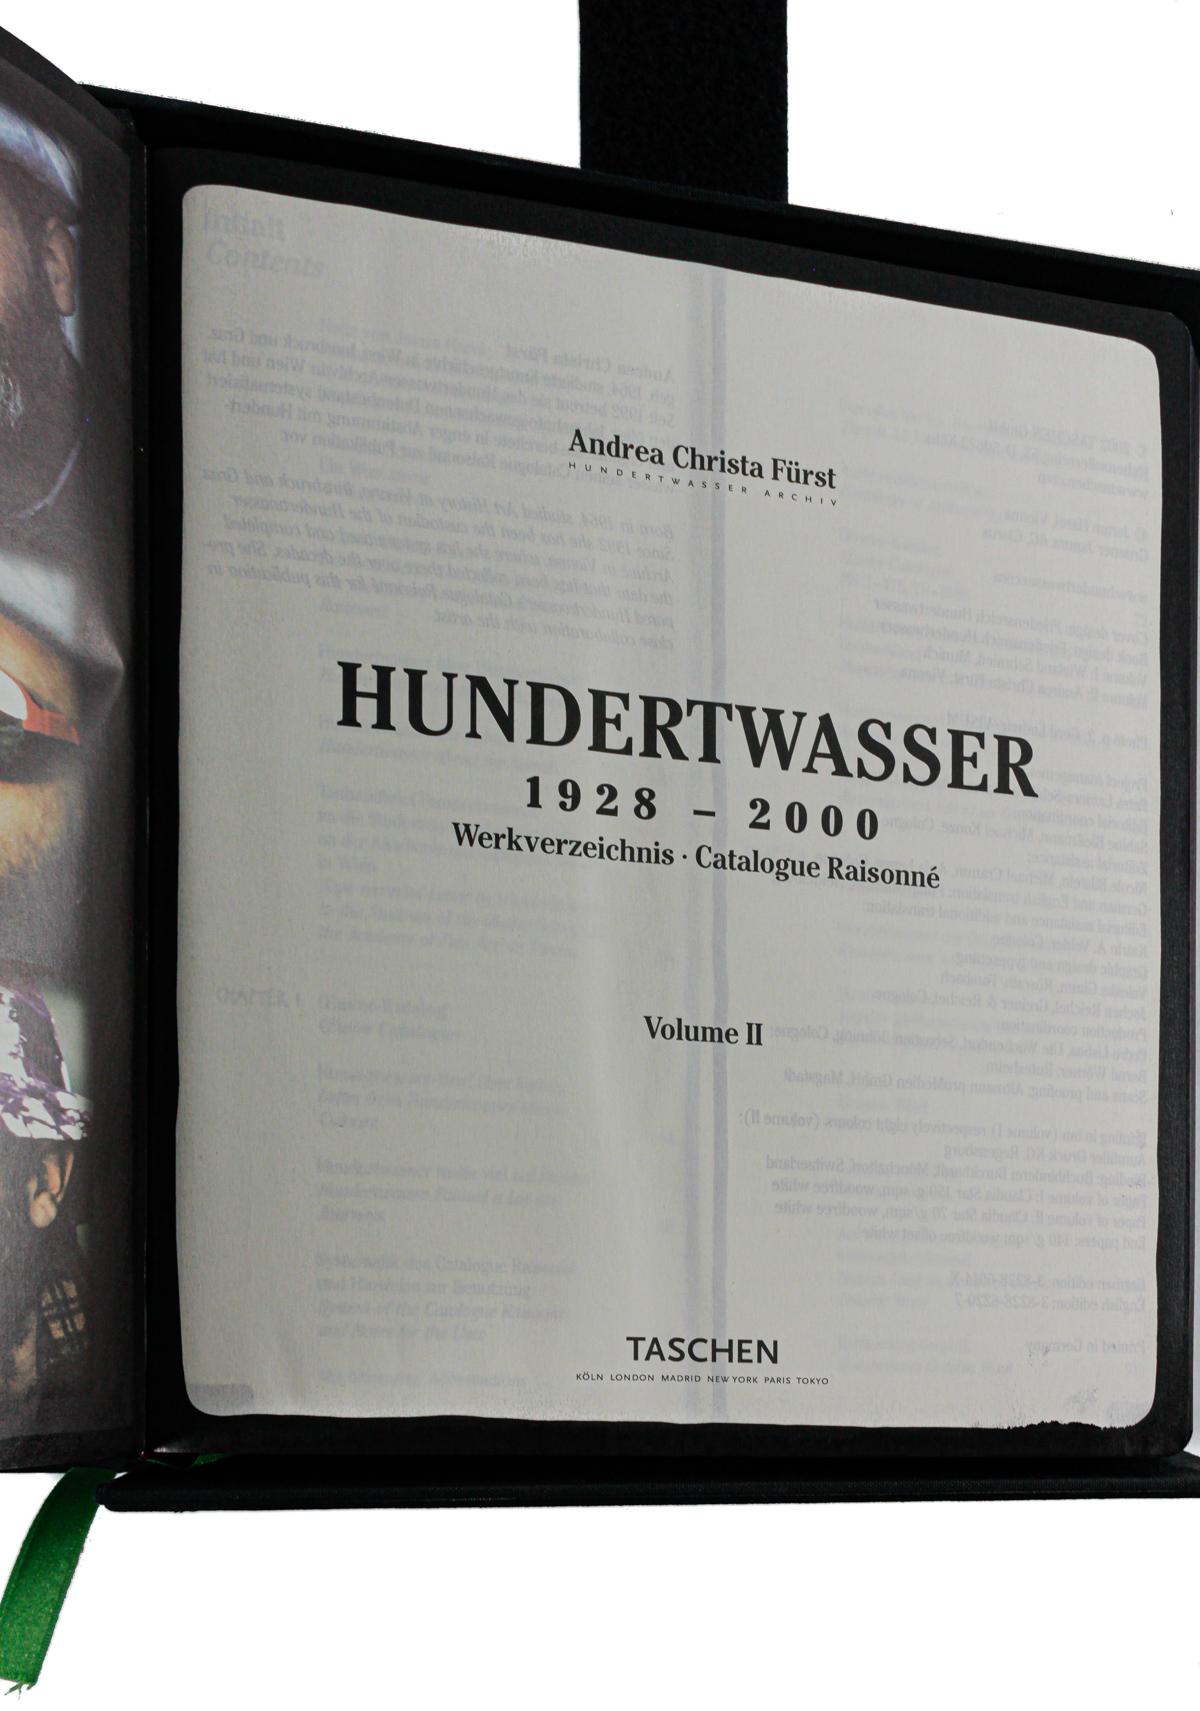 "HUNDERTWASSER, 1928-2000"